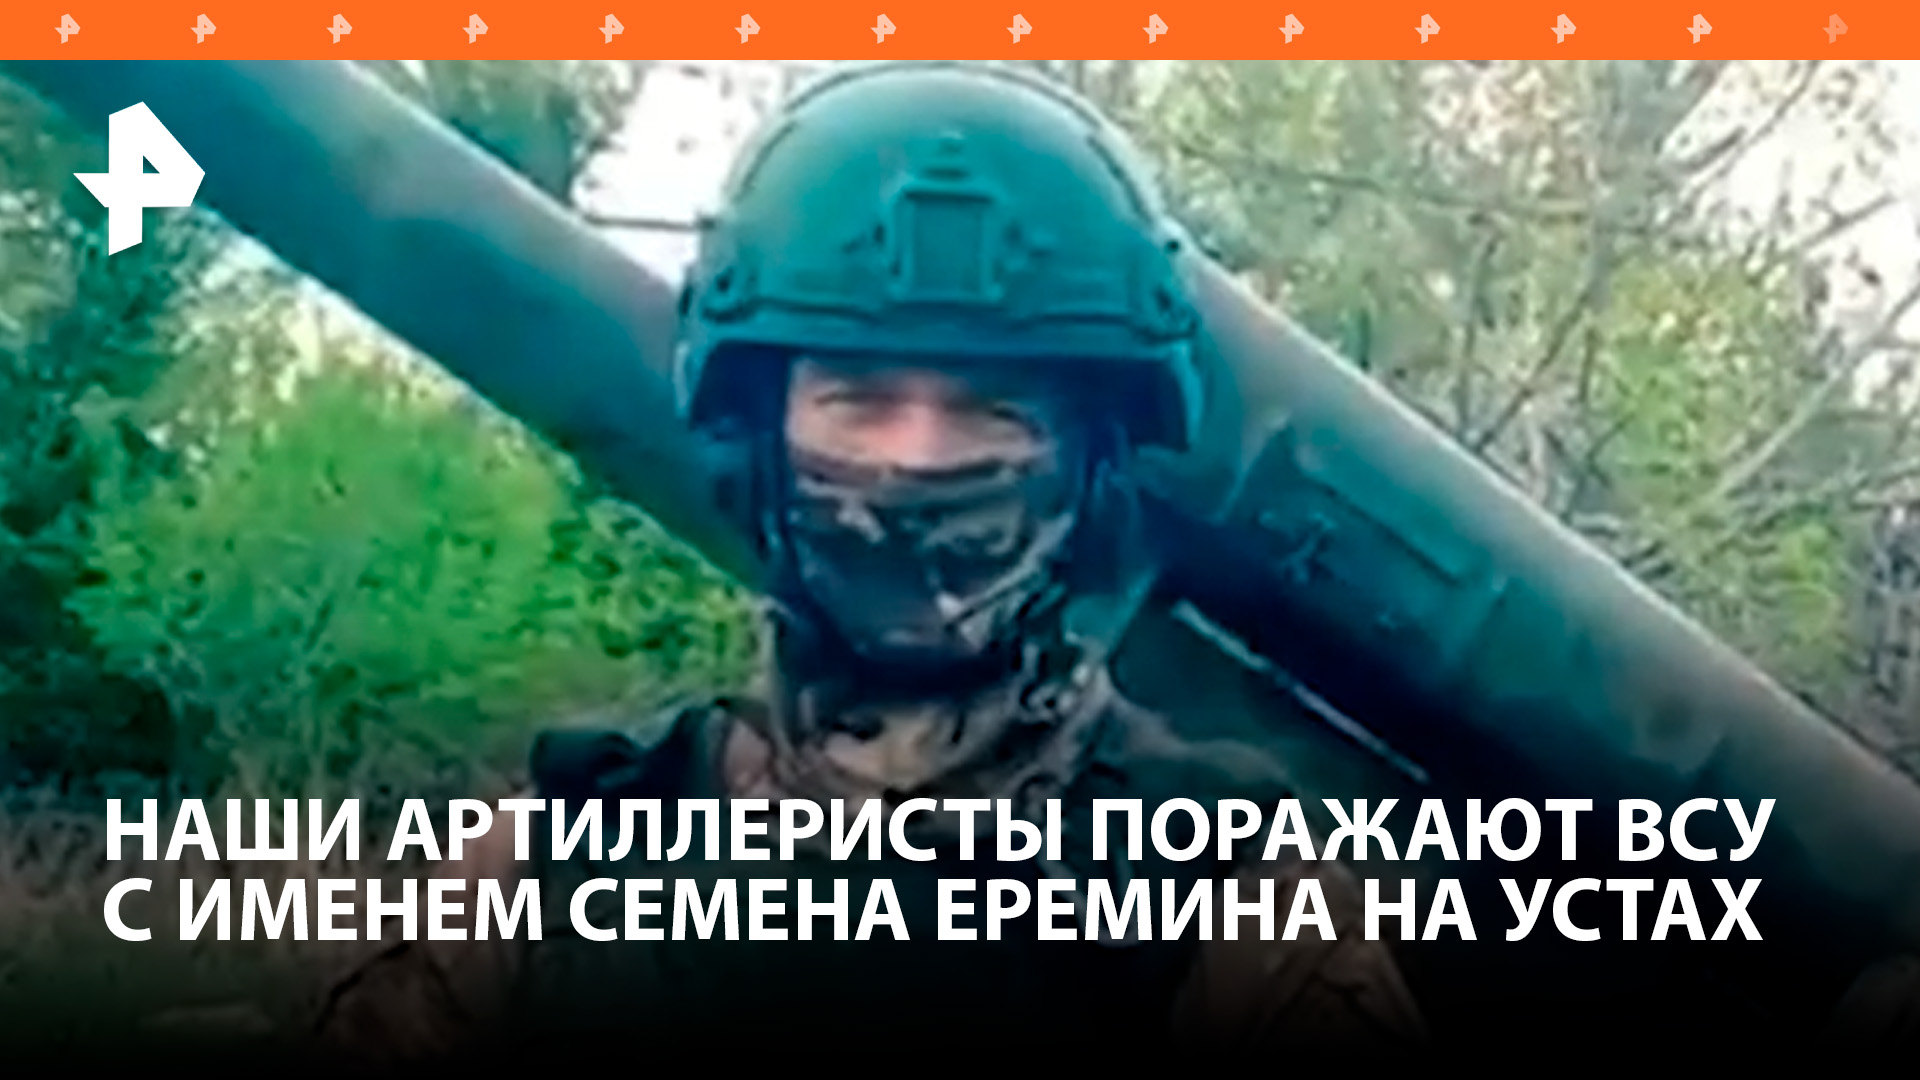 Артиллеристы ВС РФ уничтожают ВСУ, подписывая боеприпасы именем военкора Еремина / РЕН Новости